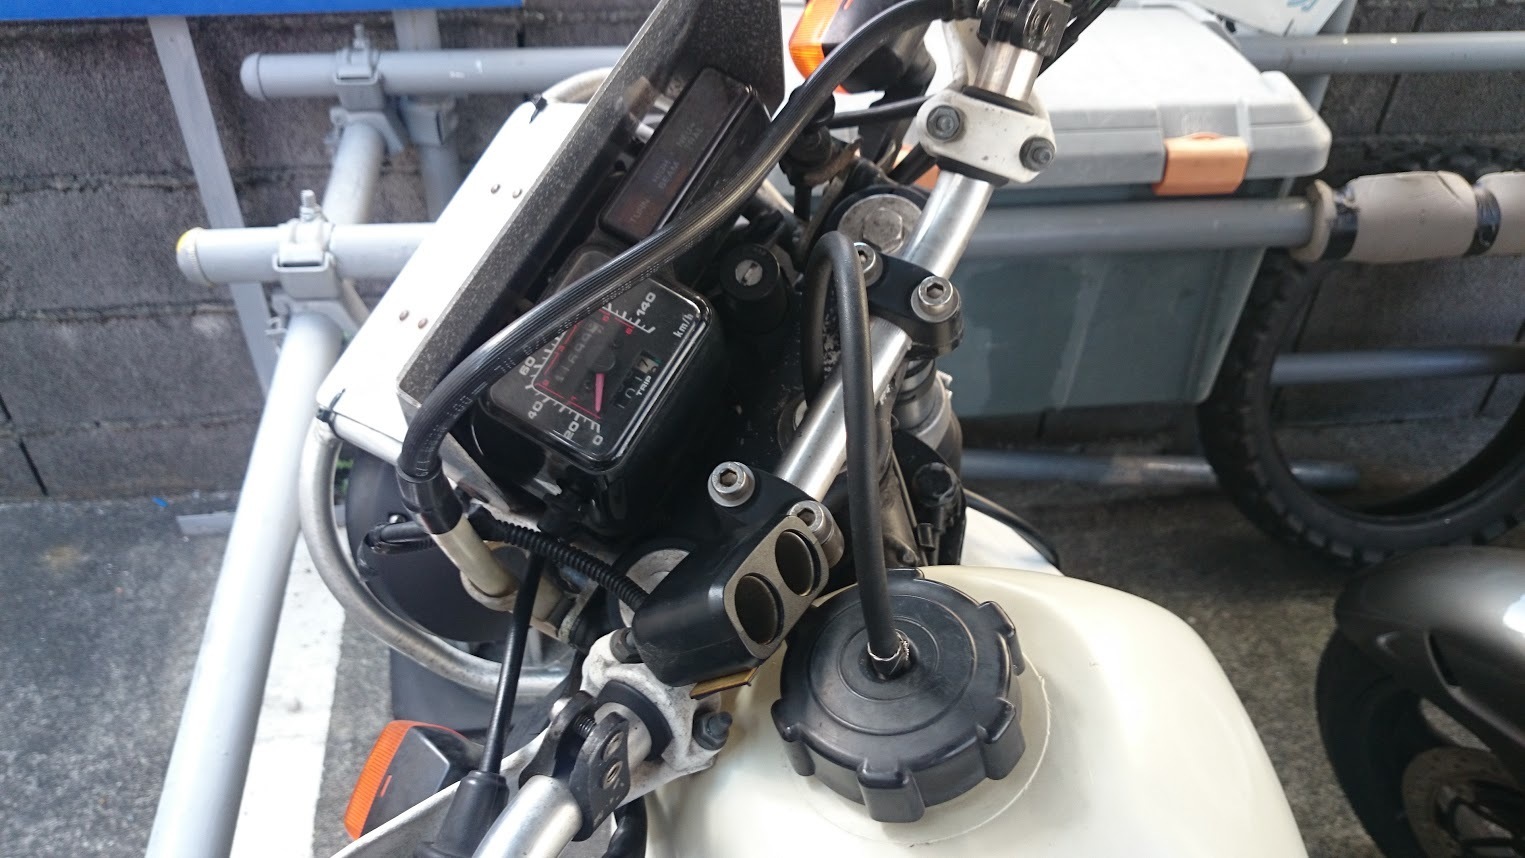 Xlr250 Baja スマートフォン 取り付け バイク中心